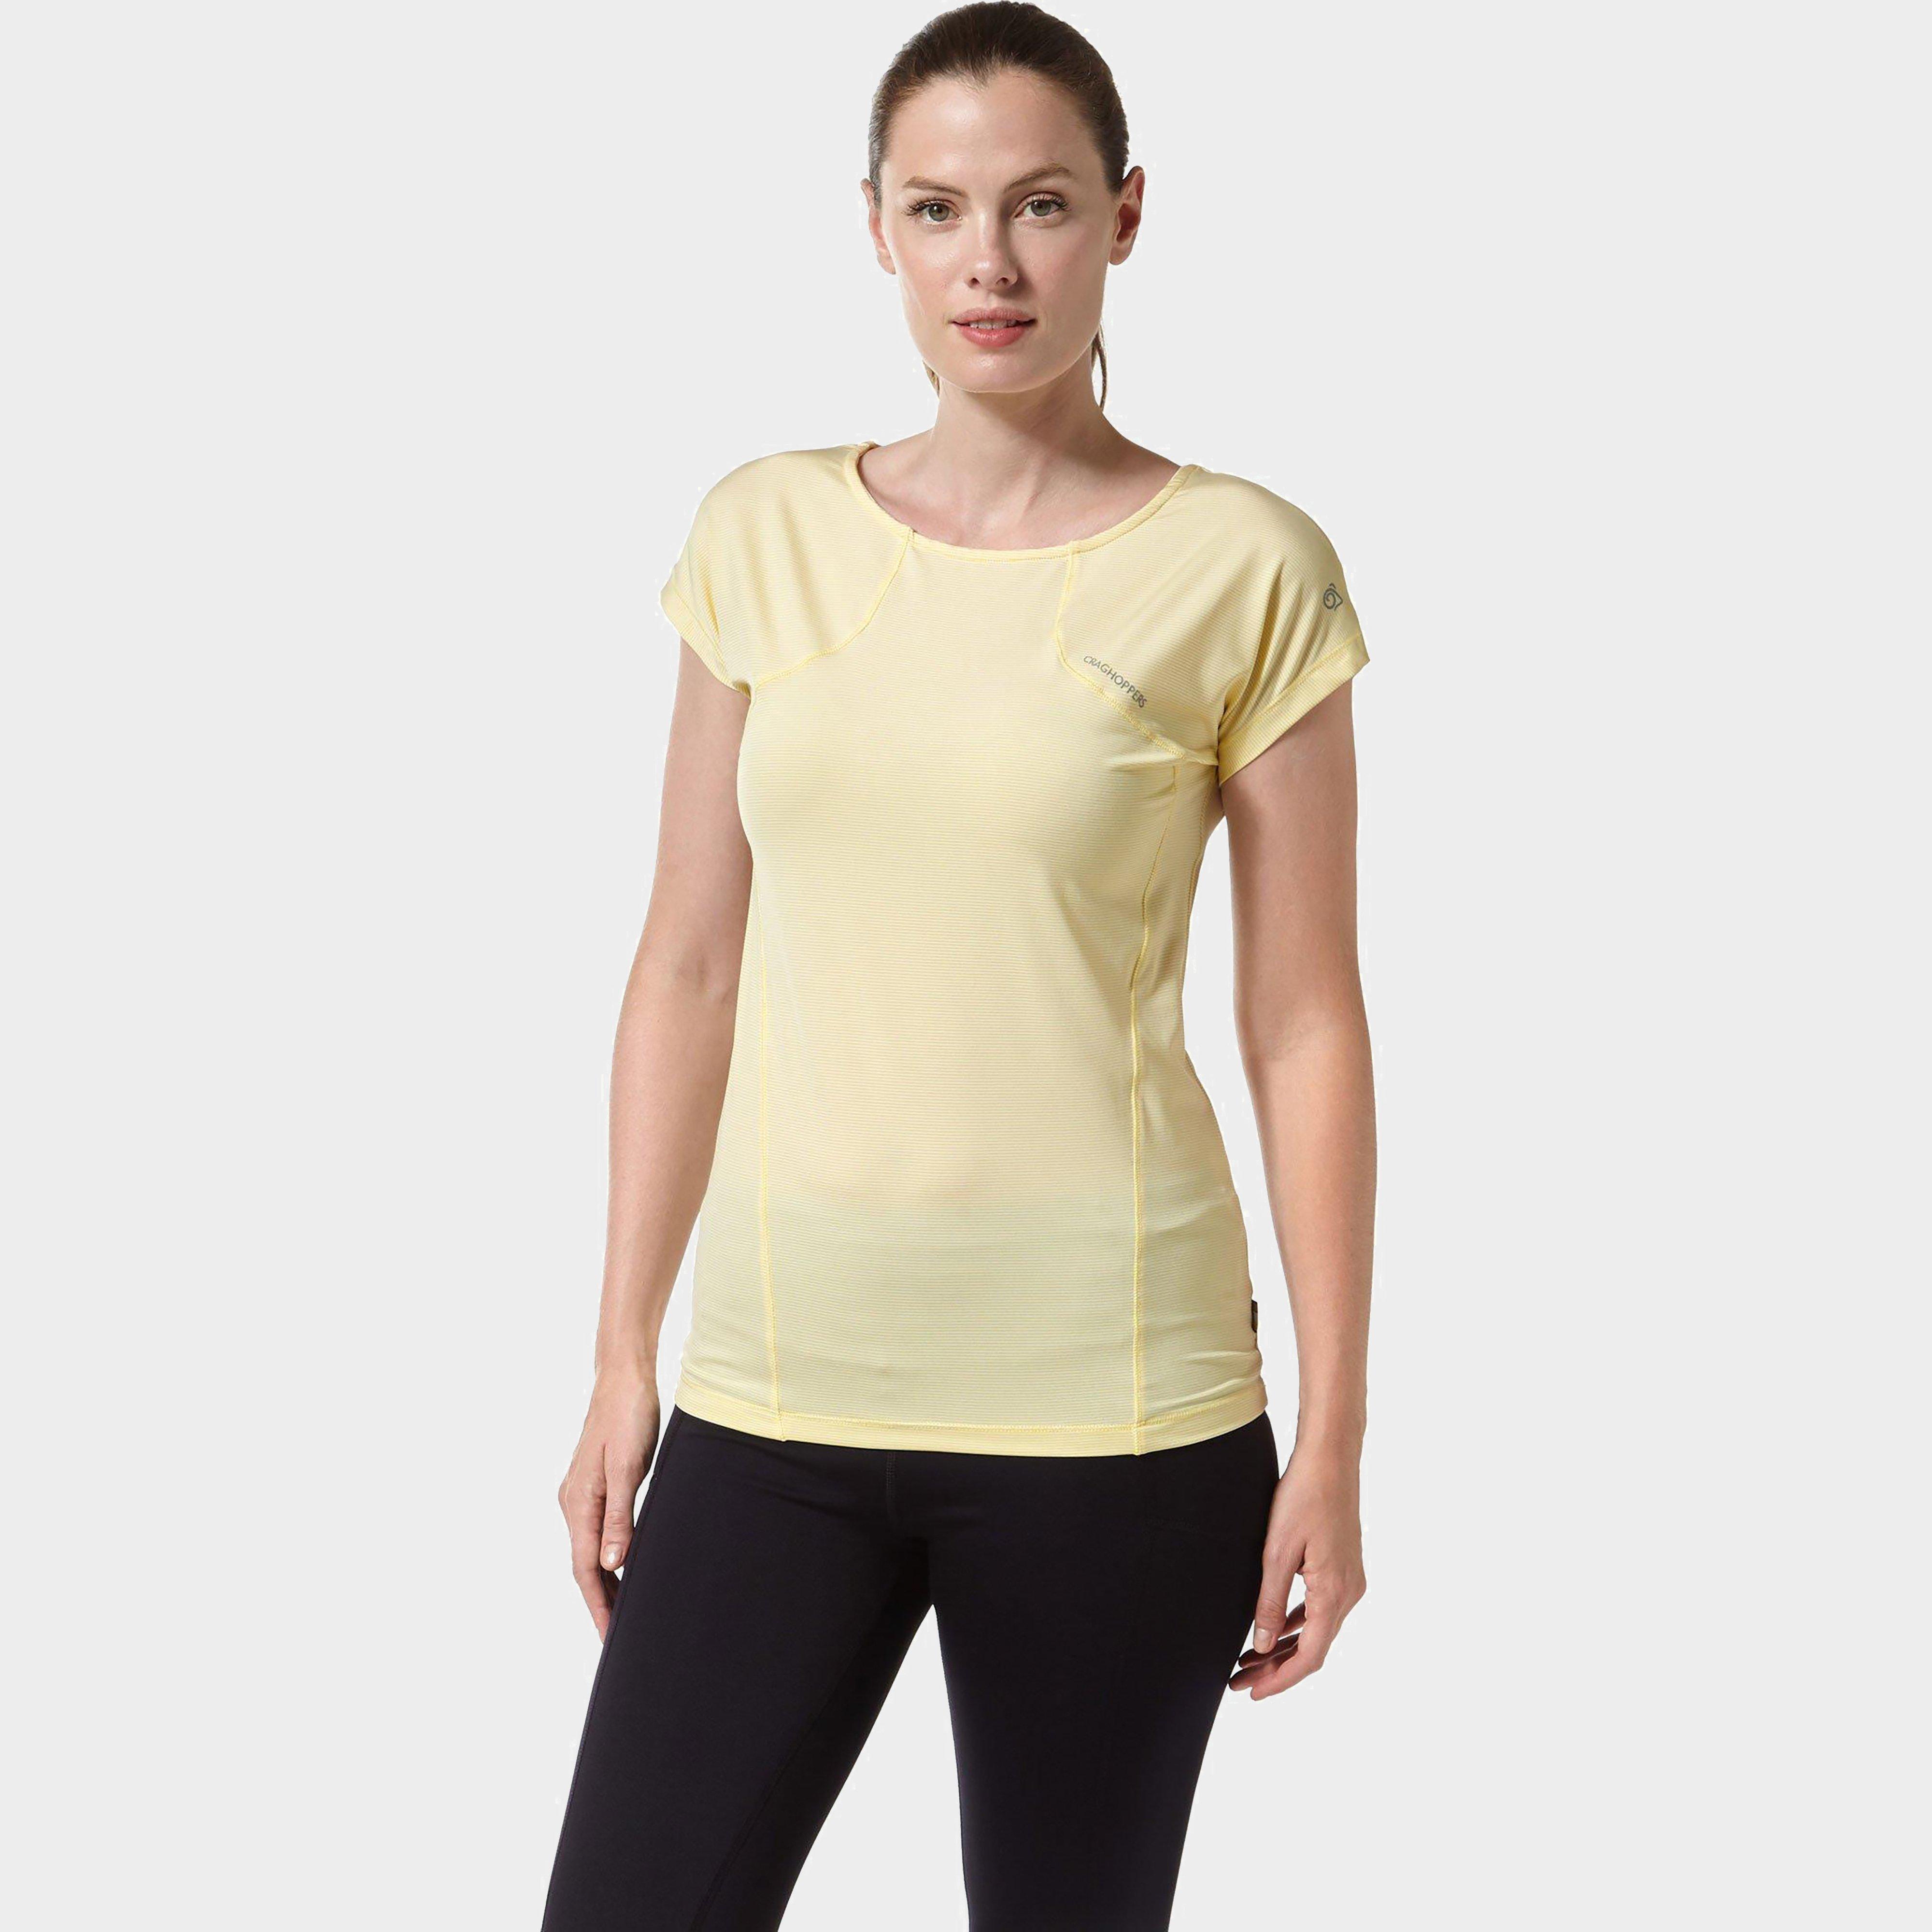 craghoppers women's fusion t-shirt - yellow, yellow